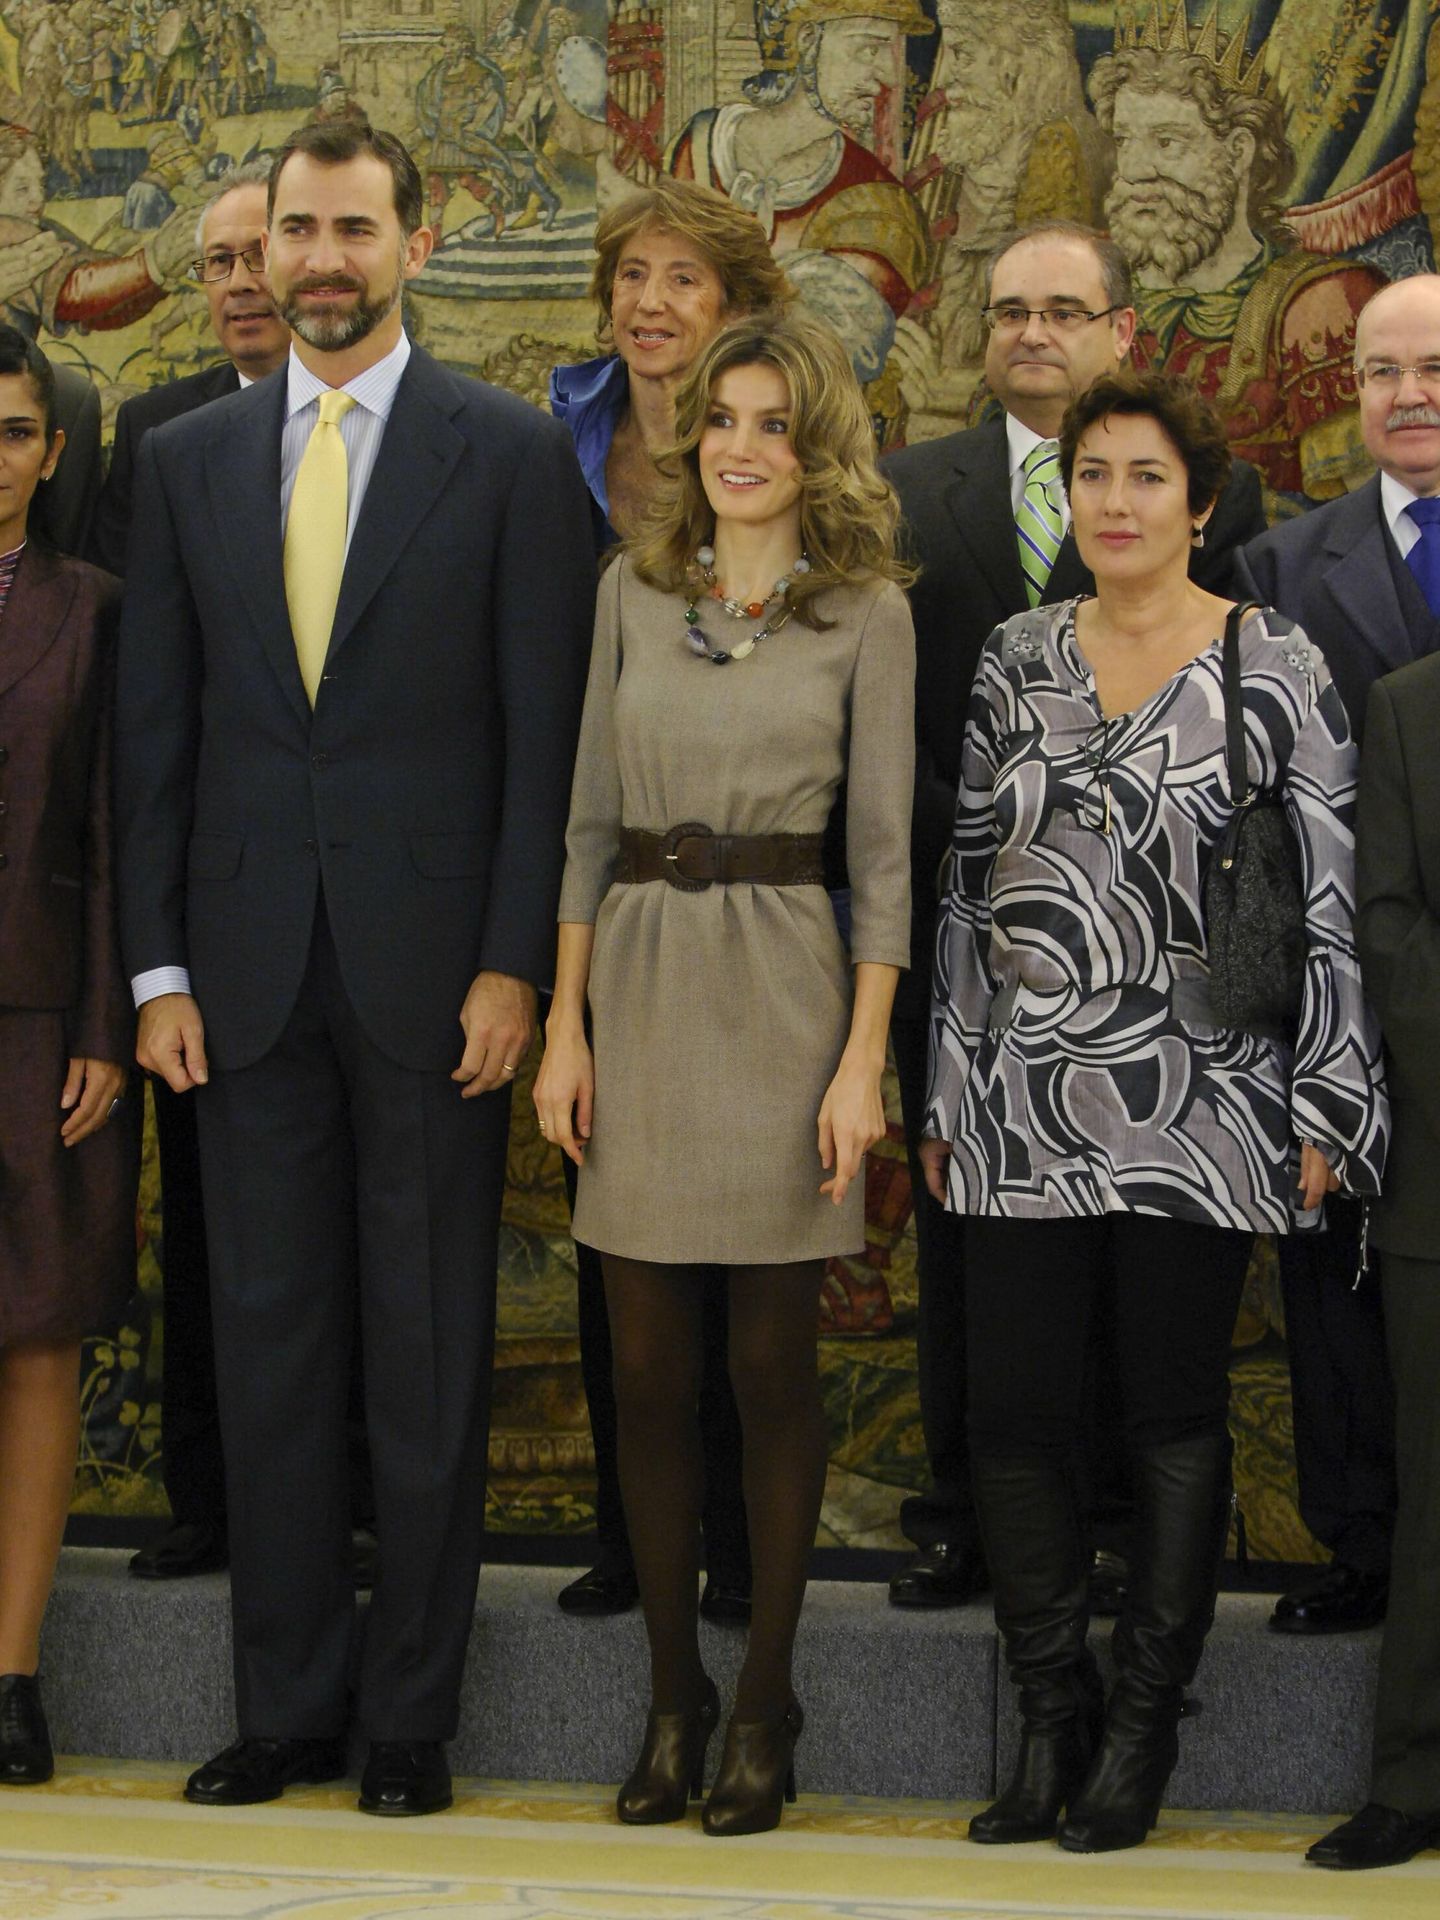 La reina Letizia en una audiencia en Zarzuela en noviembre de 2010. (Cordon Press/Jose L. Cuesta)